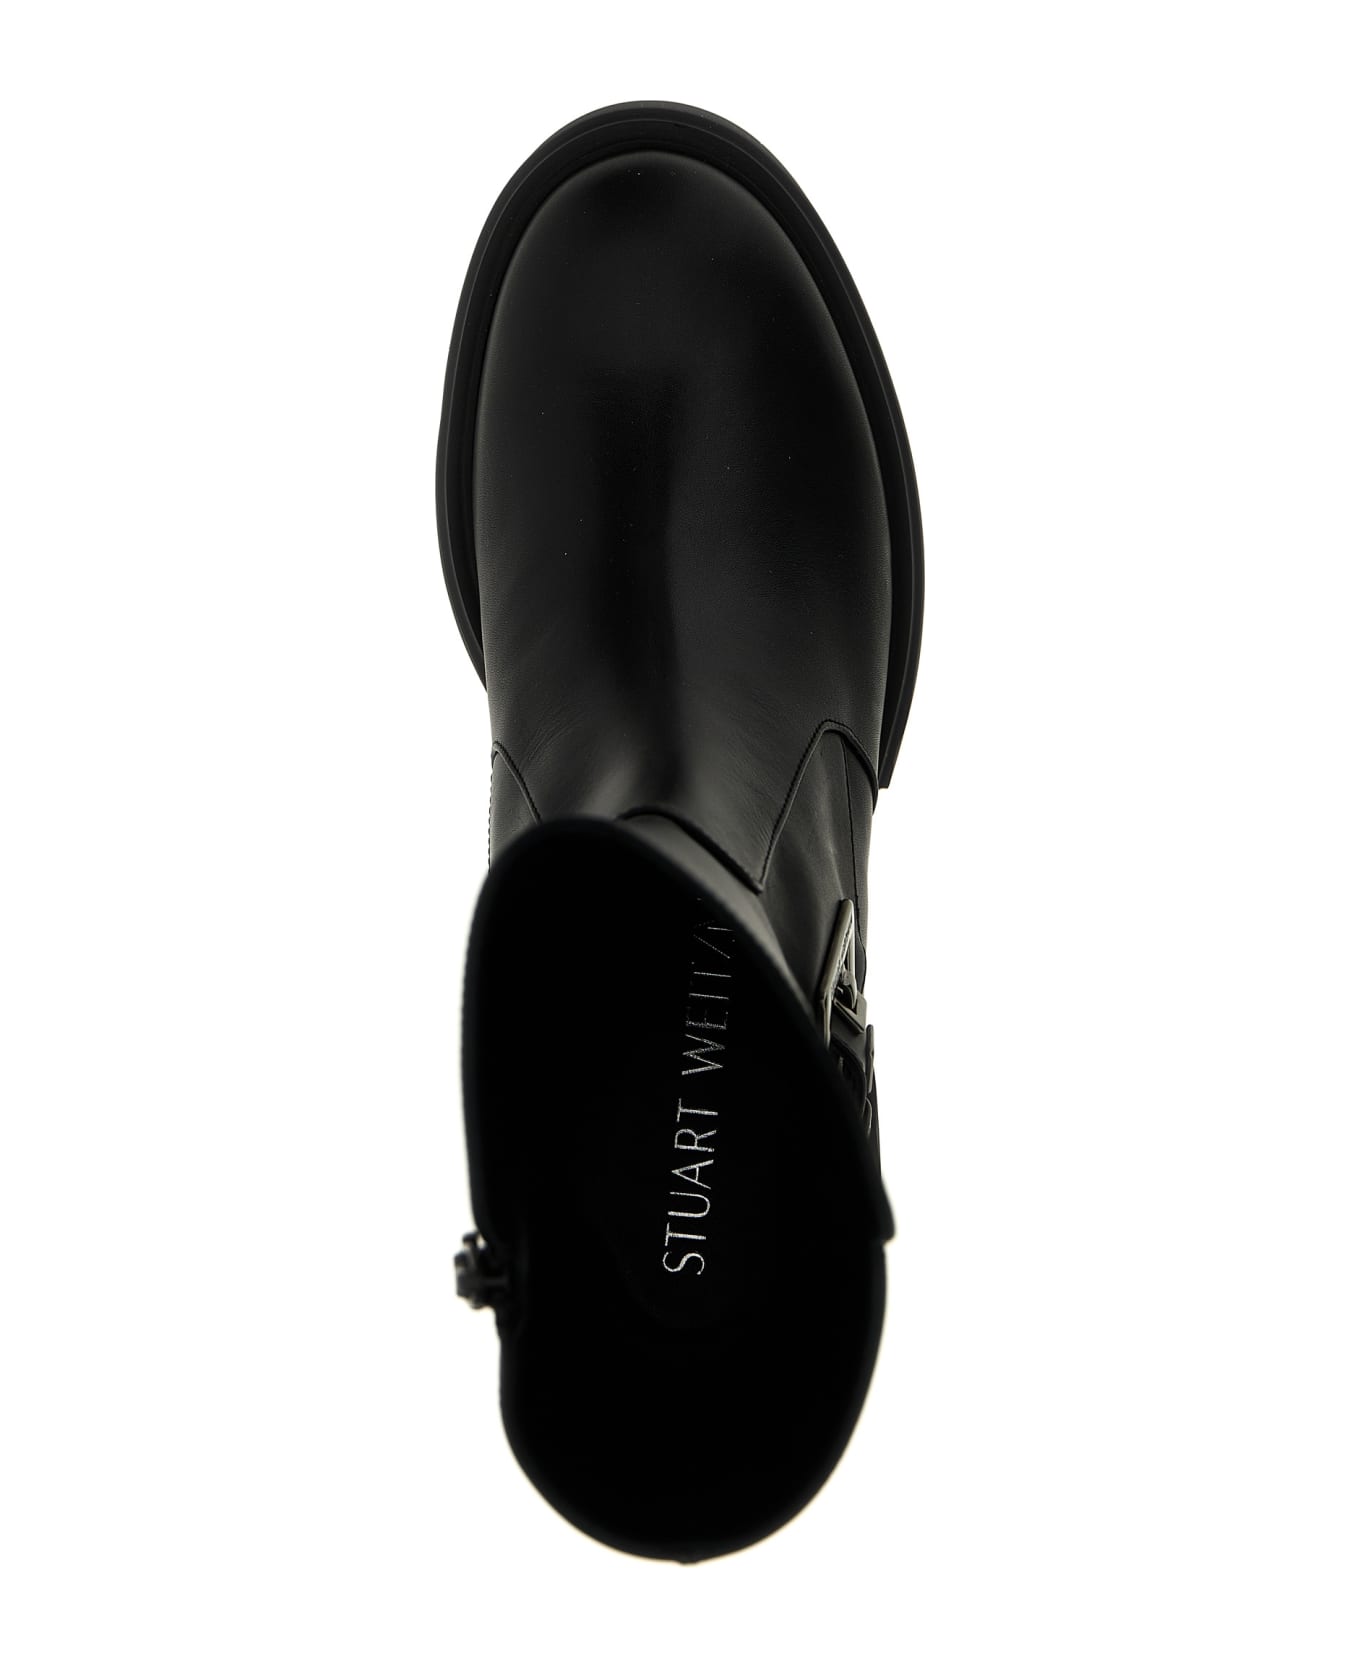 Stuart Weitzman 'soho' Boots - Black  